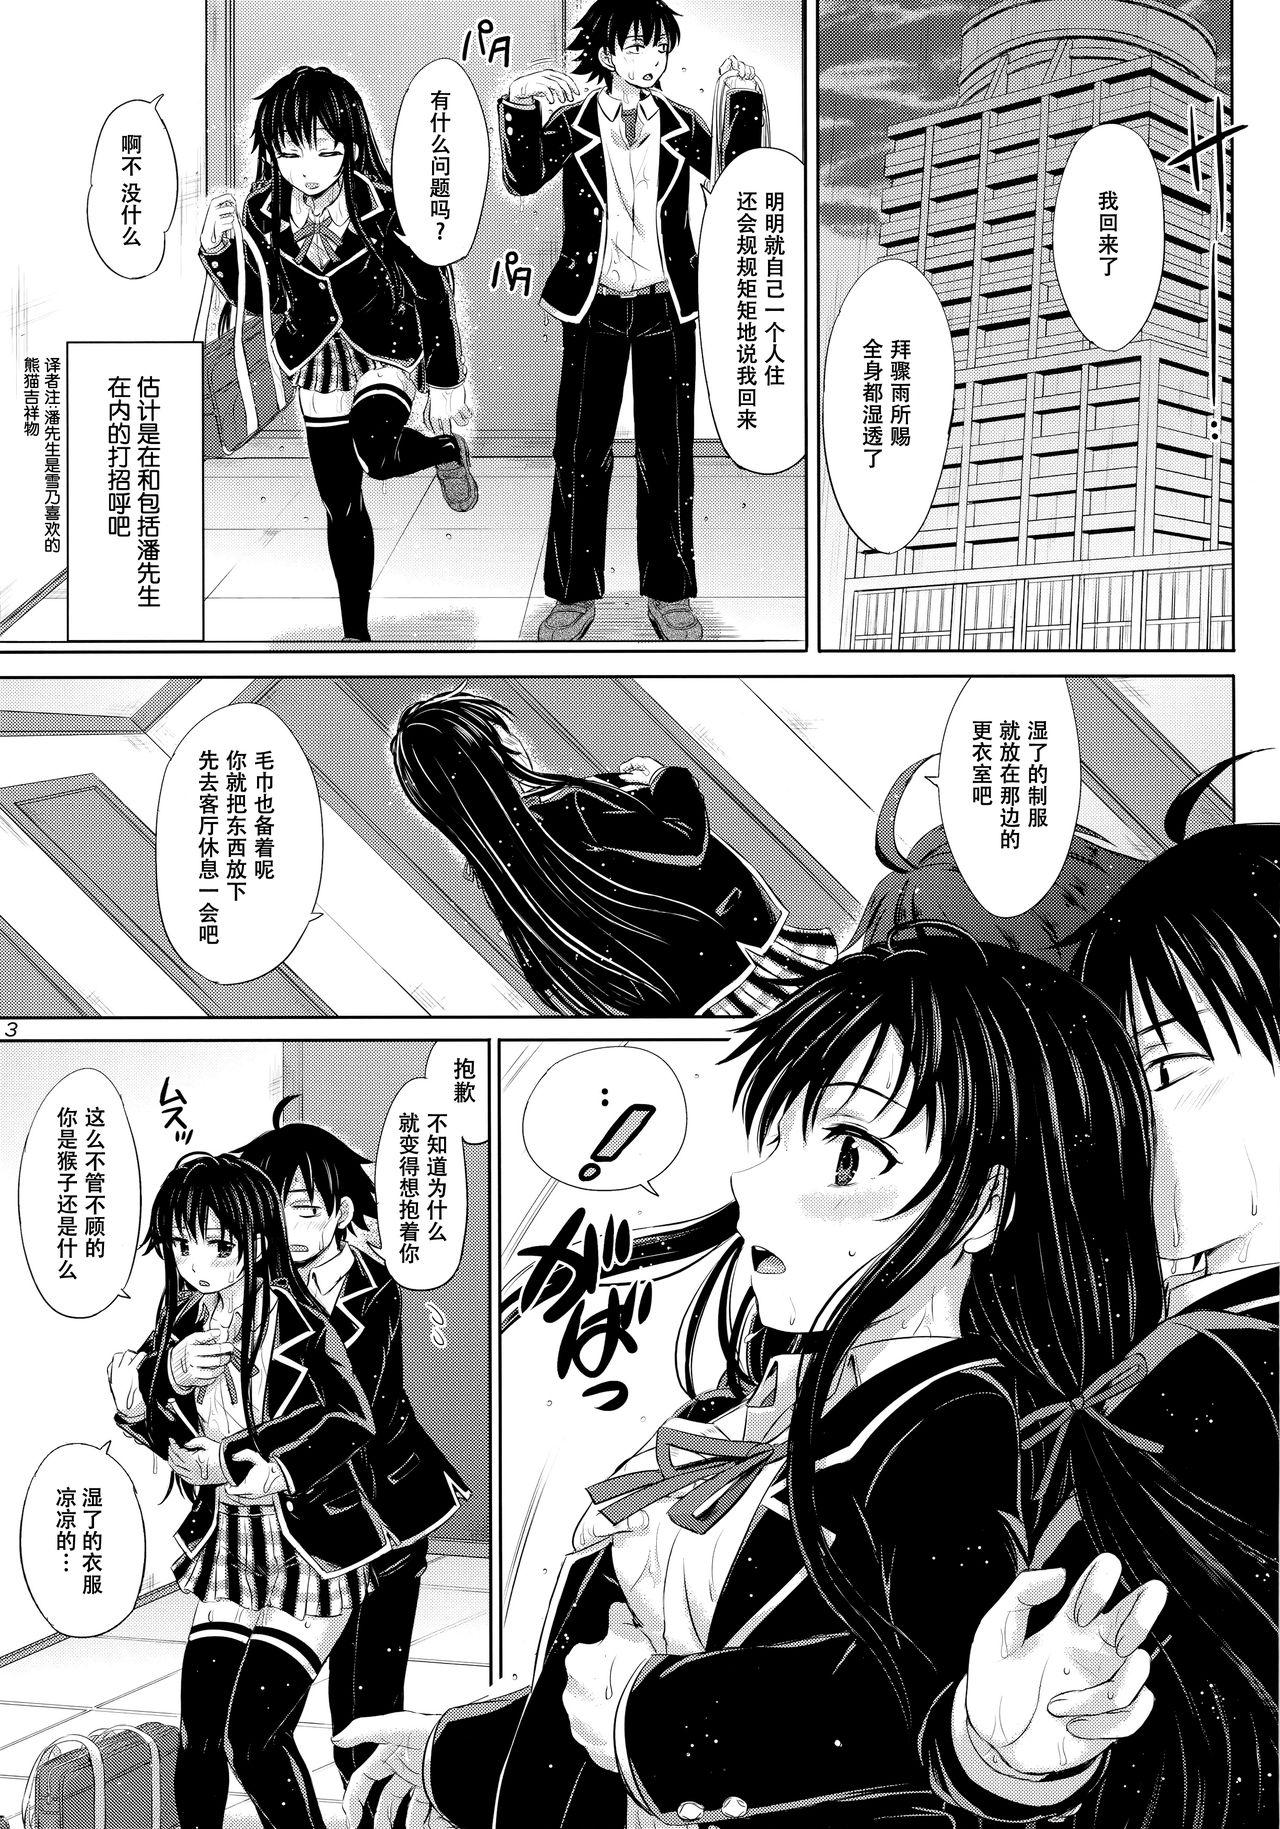 Topless Sanrenkyuu wa Asa made Nama Yukinon. - Yahari ore no seishun love come wa machigatteiru Ball Sucking - Page 3